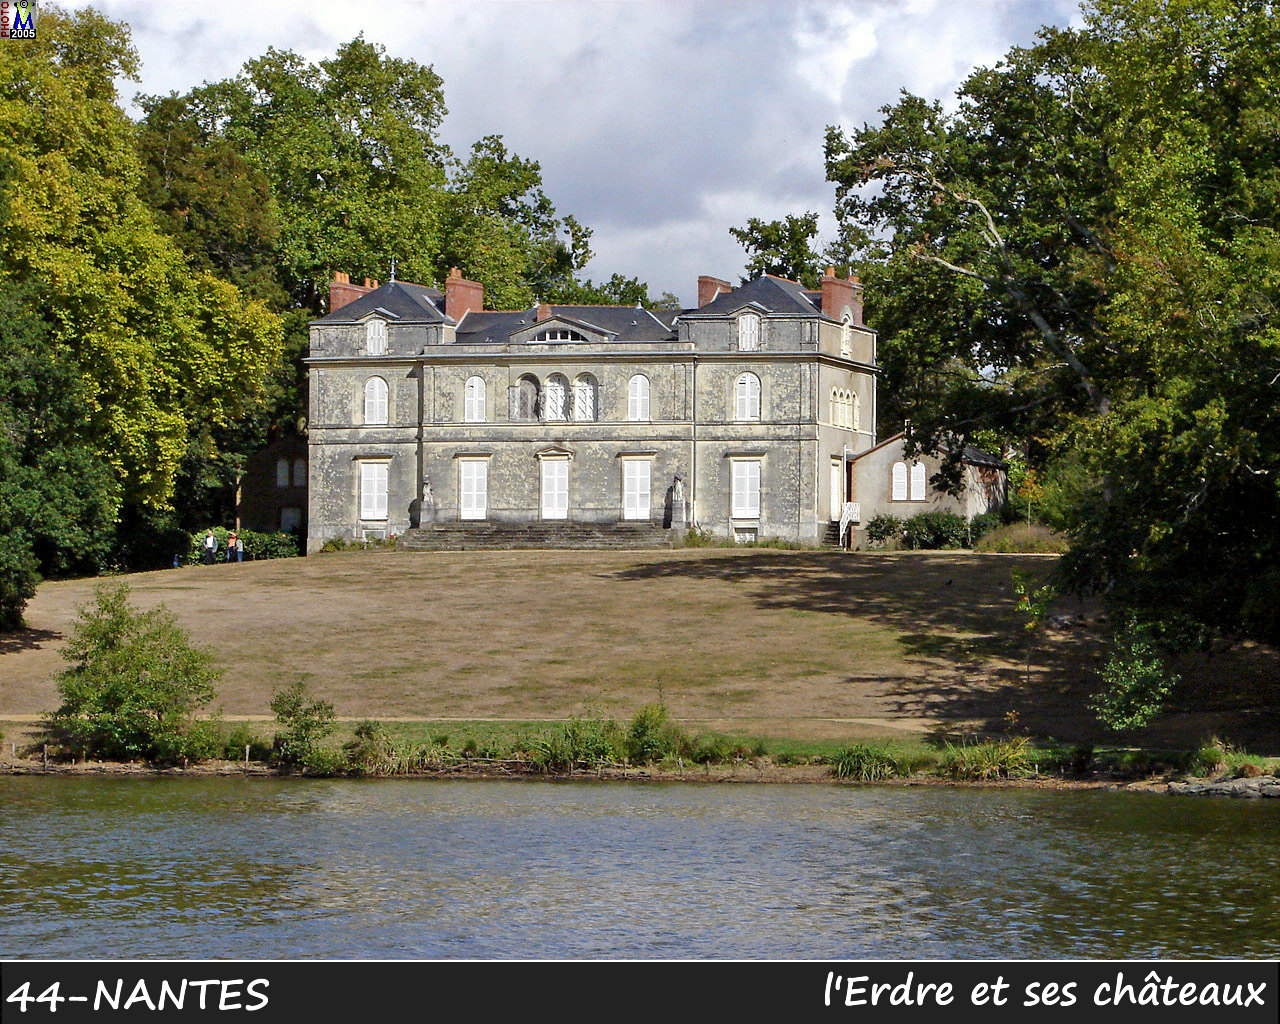 44NANTES_erdre-chateau_112.jpg